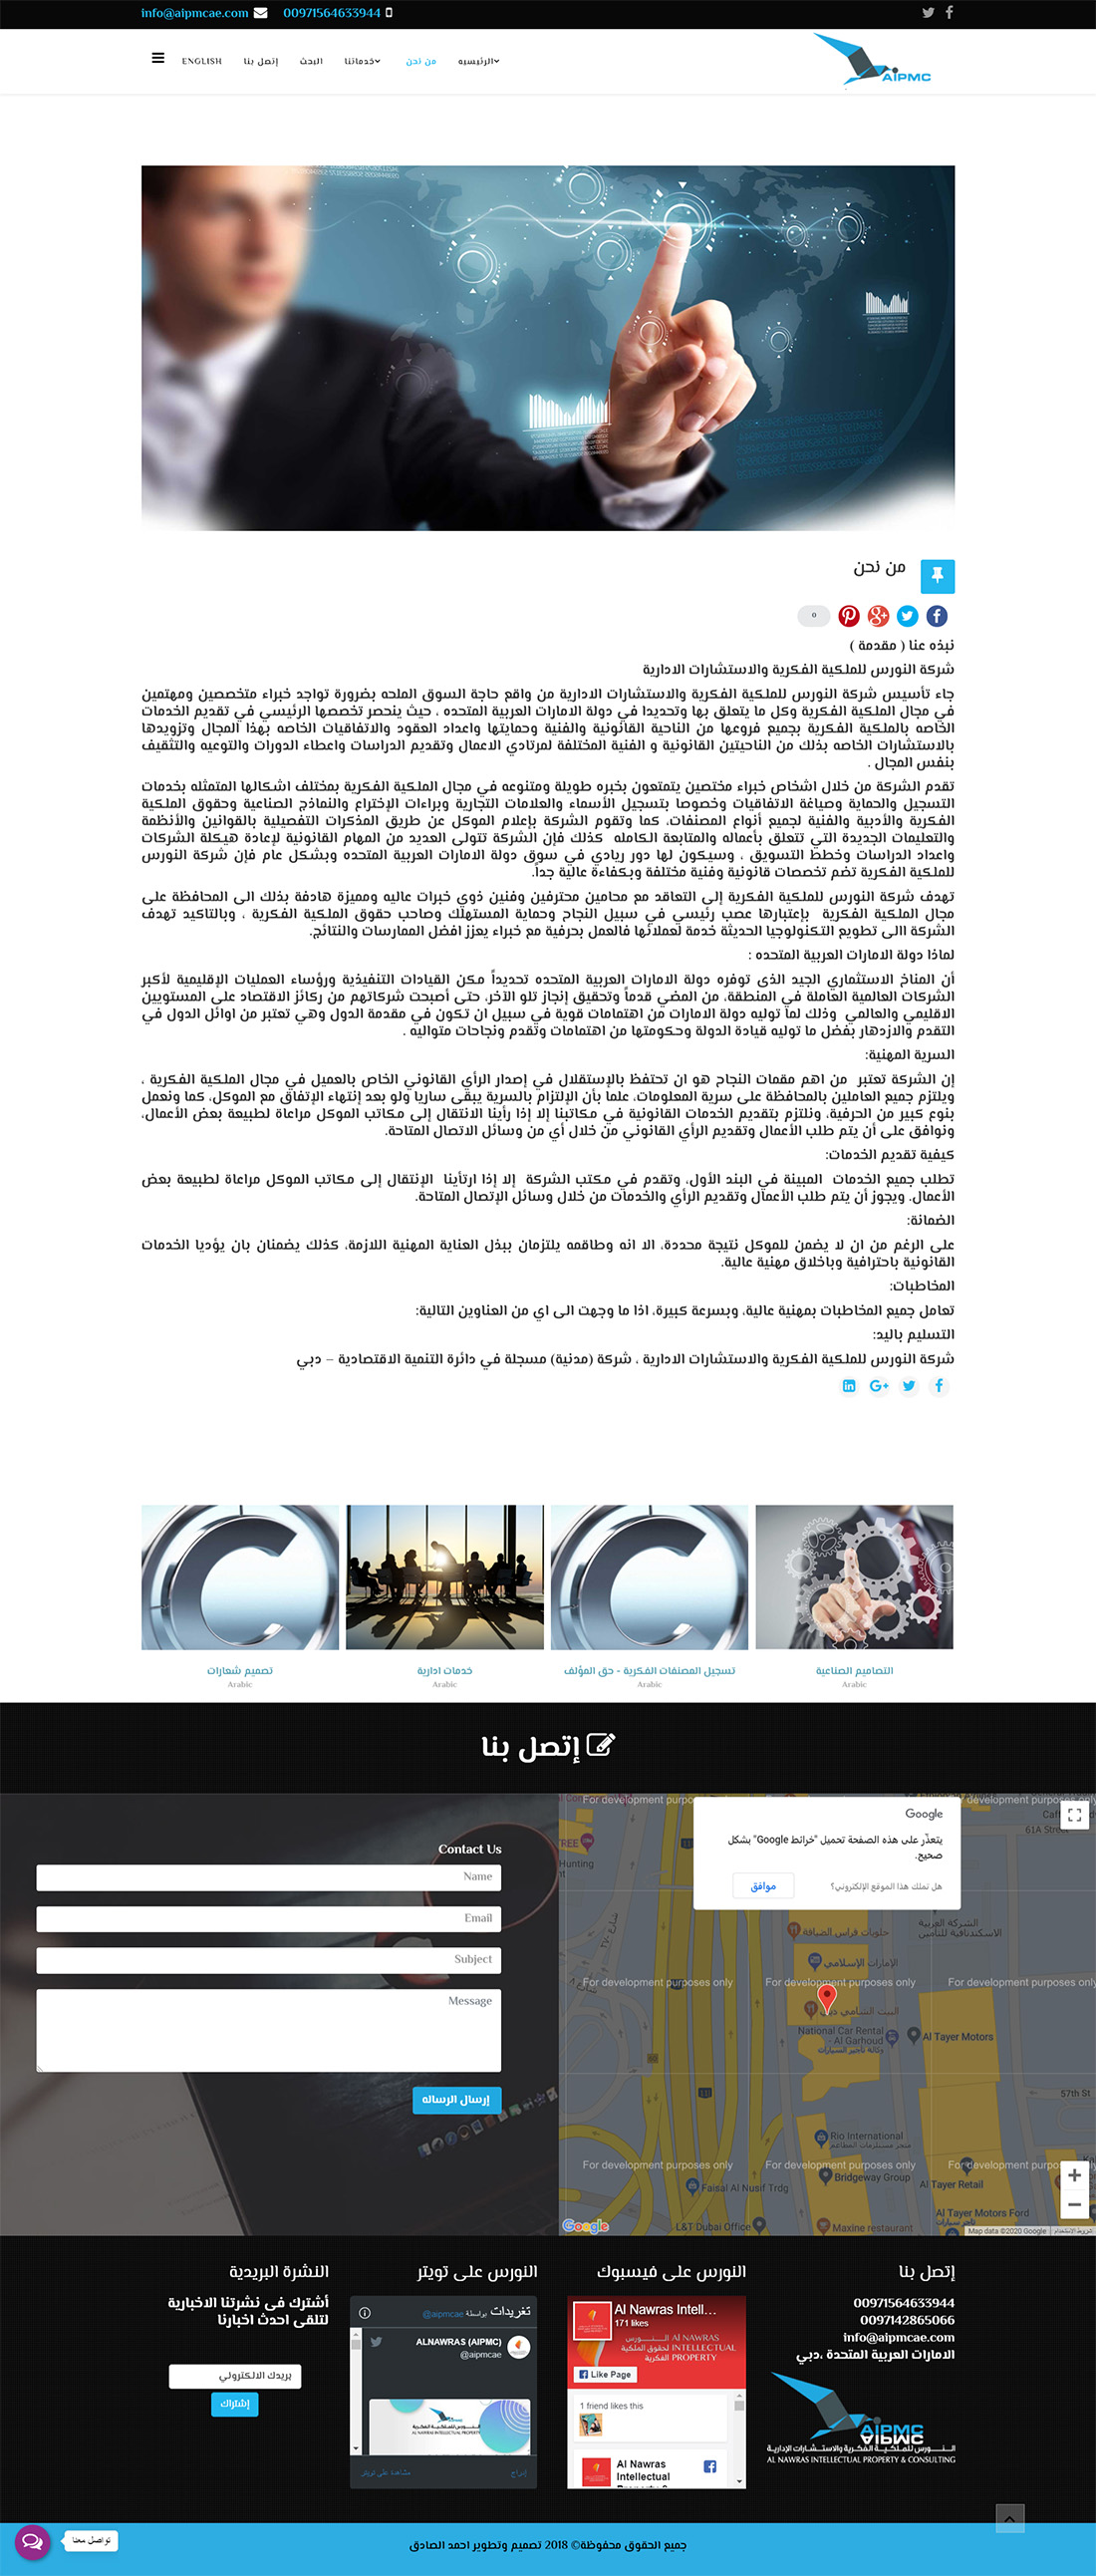 تصميم موقع الكتروني لشركة النورس للملكية الفكرية والاستشارات الادارية فى الرياض السعودية